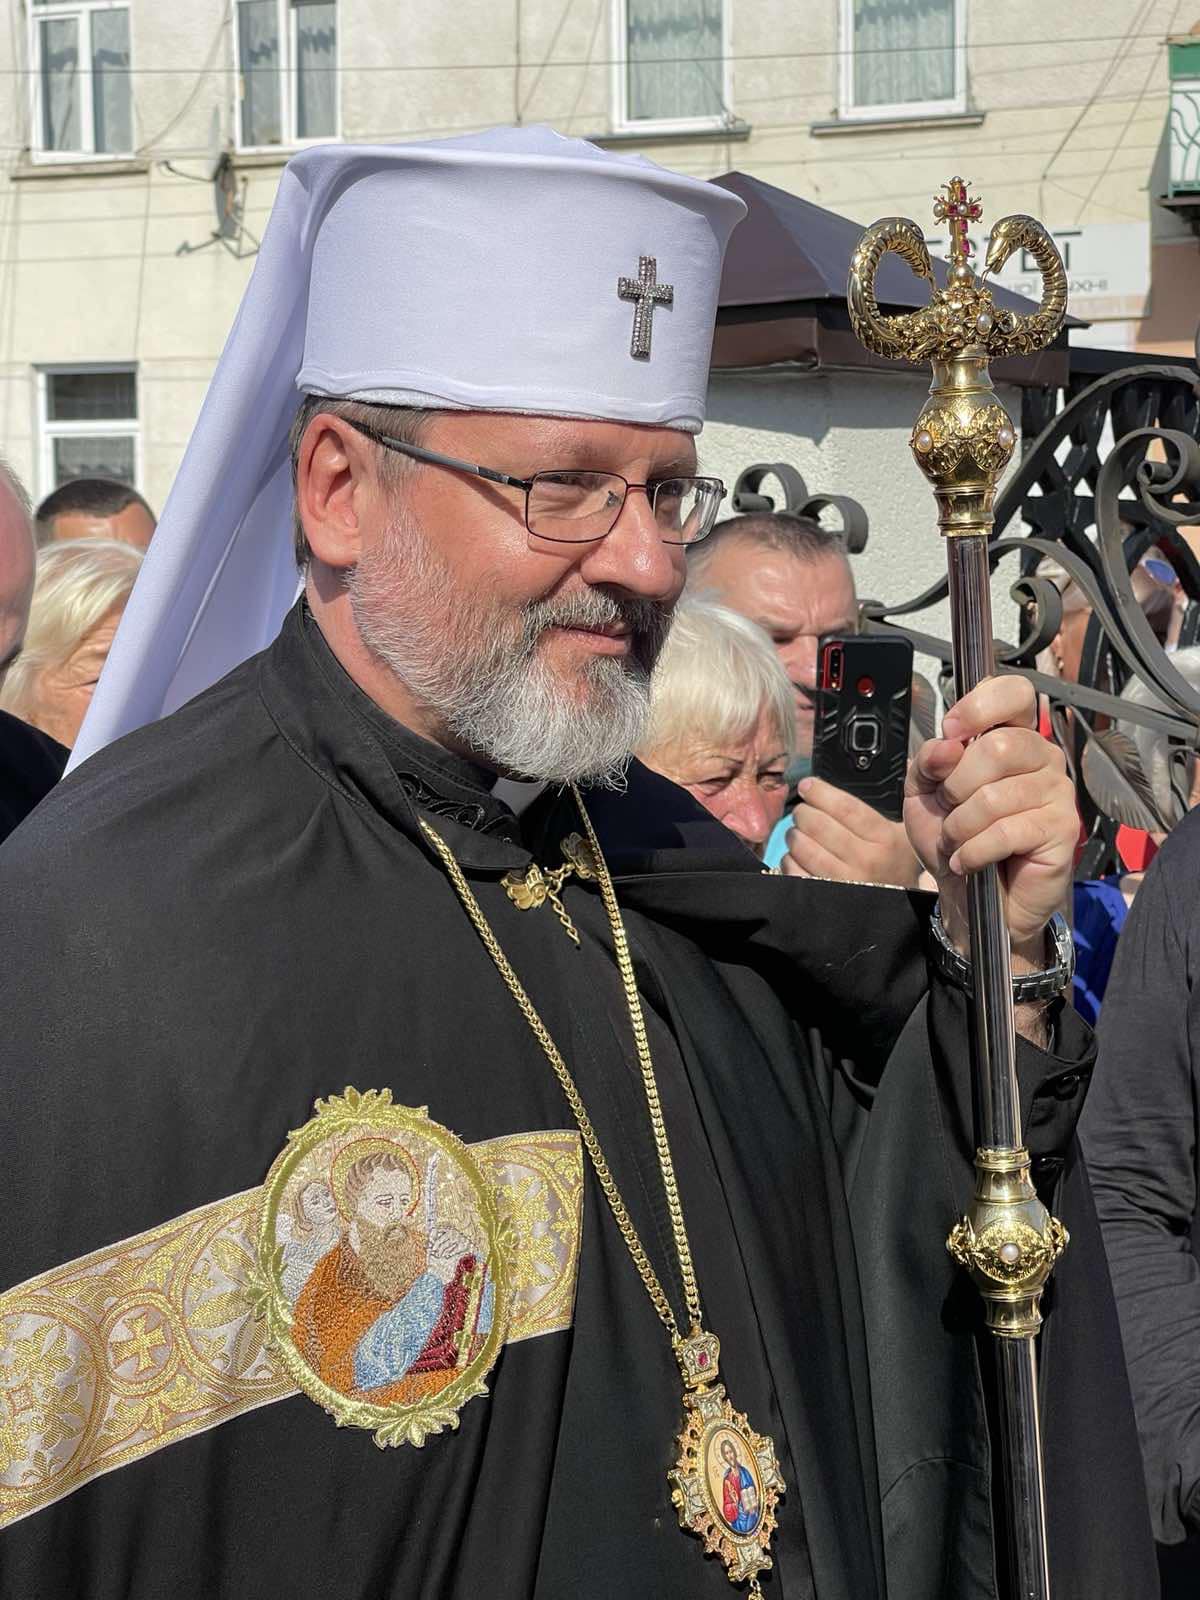 Сьогодні вітаємо з днем народження Главу Української Греко-Католицької церкви Святослава ШЕВЧУКА